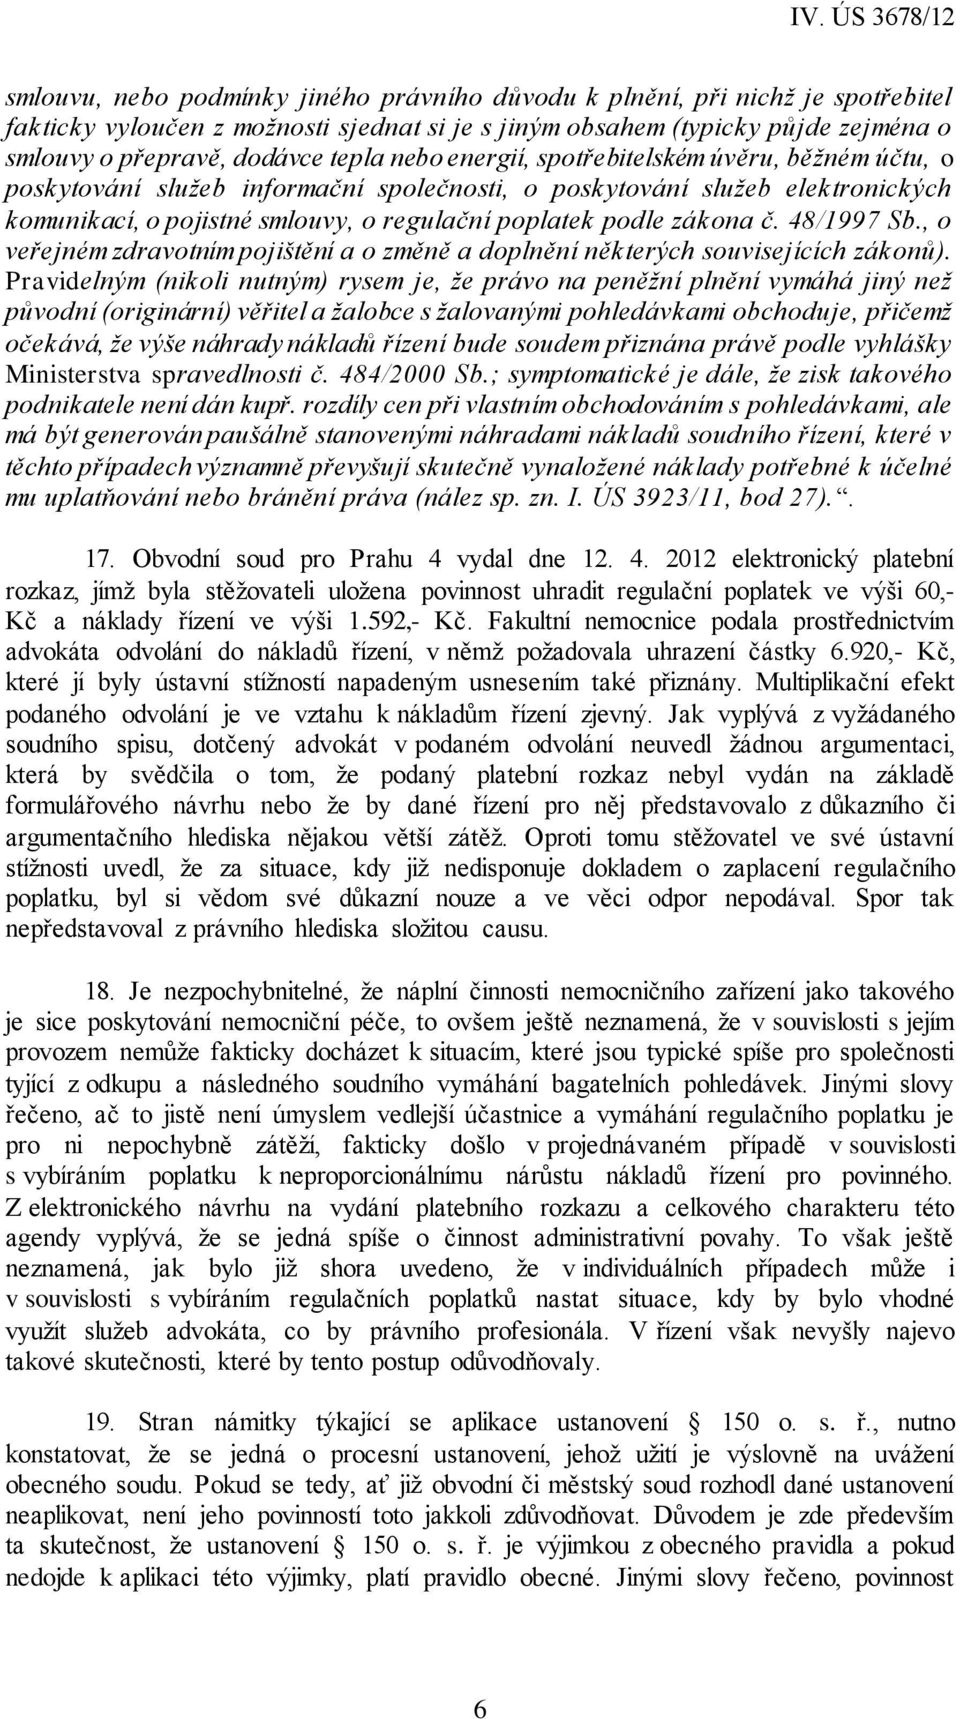 48/1997 Sb., o veřejném zdravotním pojištění a o změně a doplnění některých souvisejících zákonů).